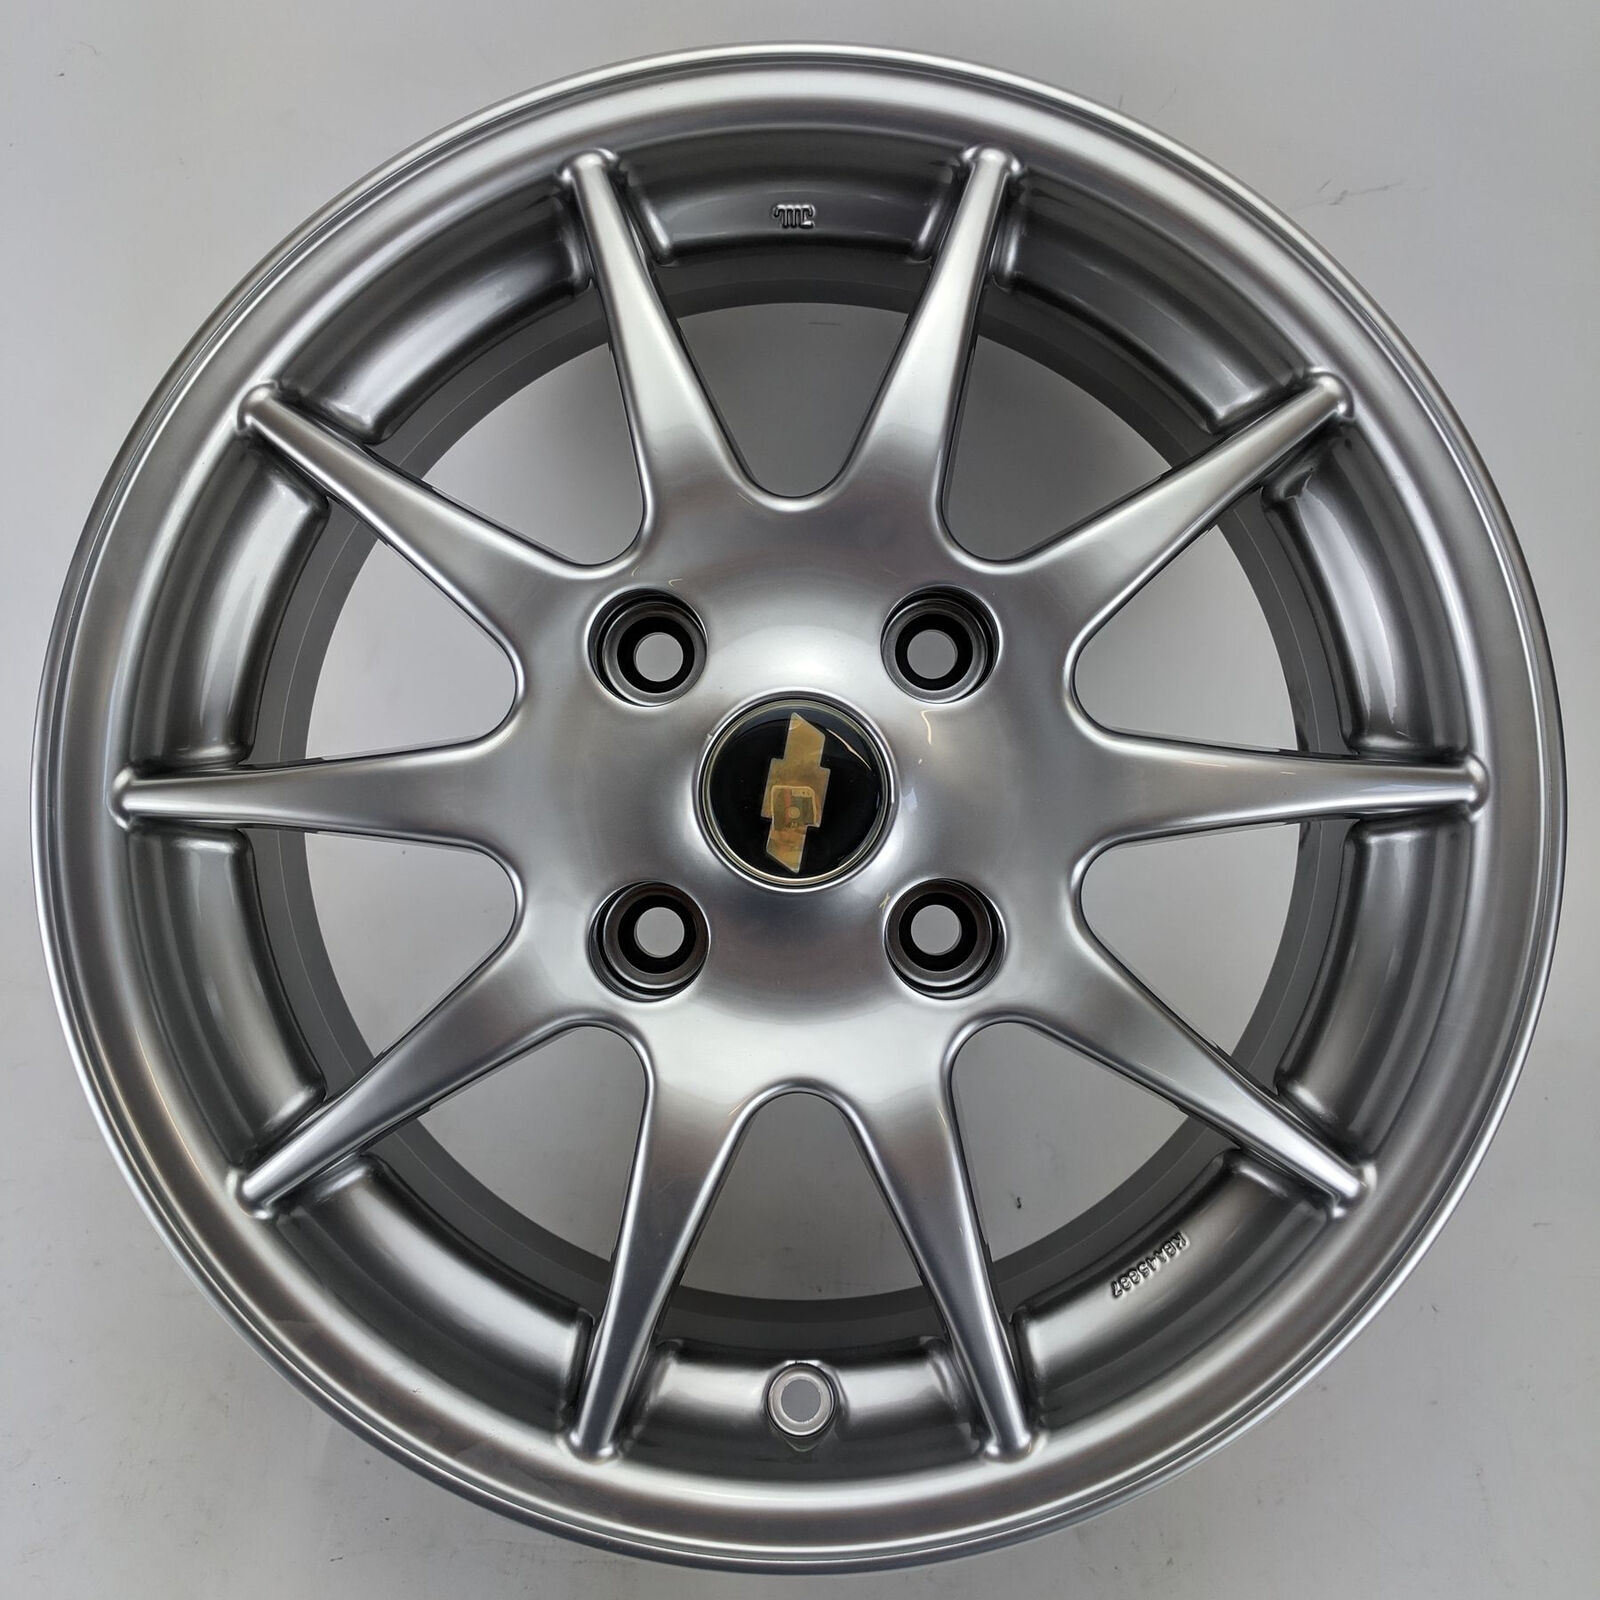 Chevrolet Nubira Lacetti Alloy Wheel 6J X 15 ET44 351HP56044E5 Genuine